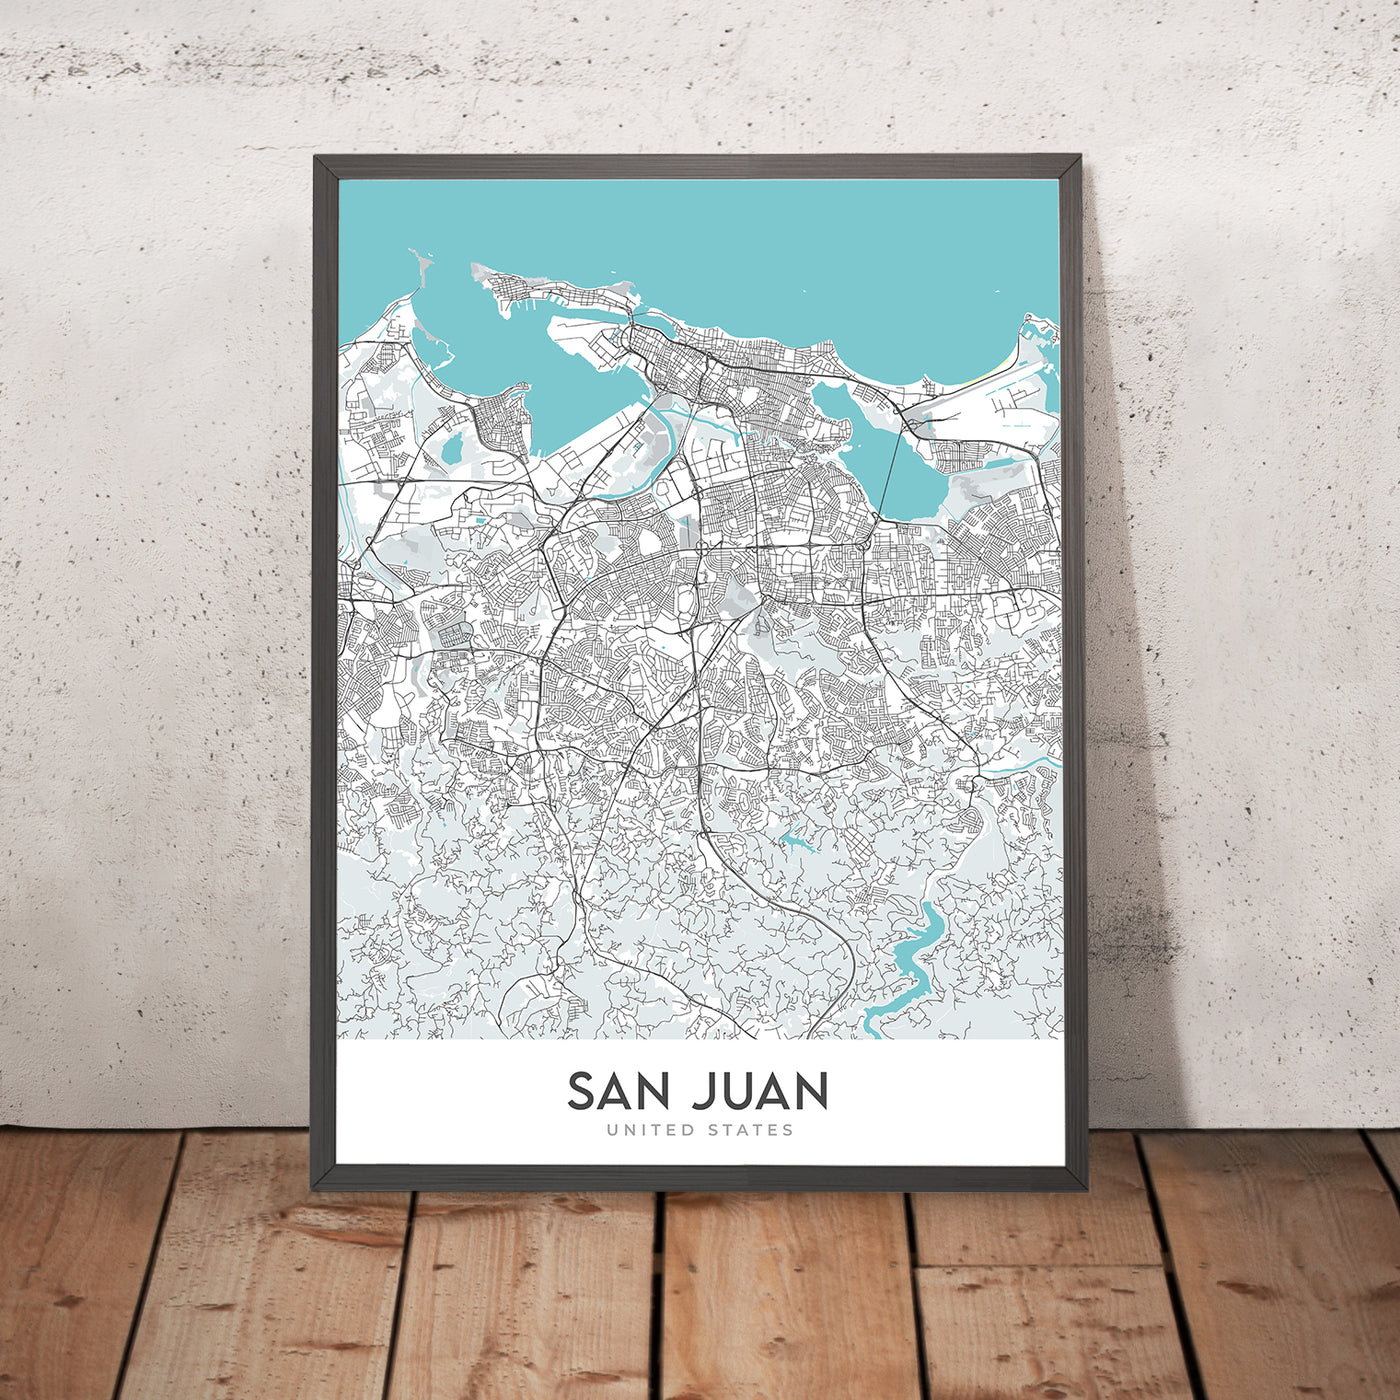 Moderner Stadtplan von San Juan, Puerto Rico: Condado, Old San Juan, El Yunque, Castillo San Felipe del Morro, Castillo San Cristóbal